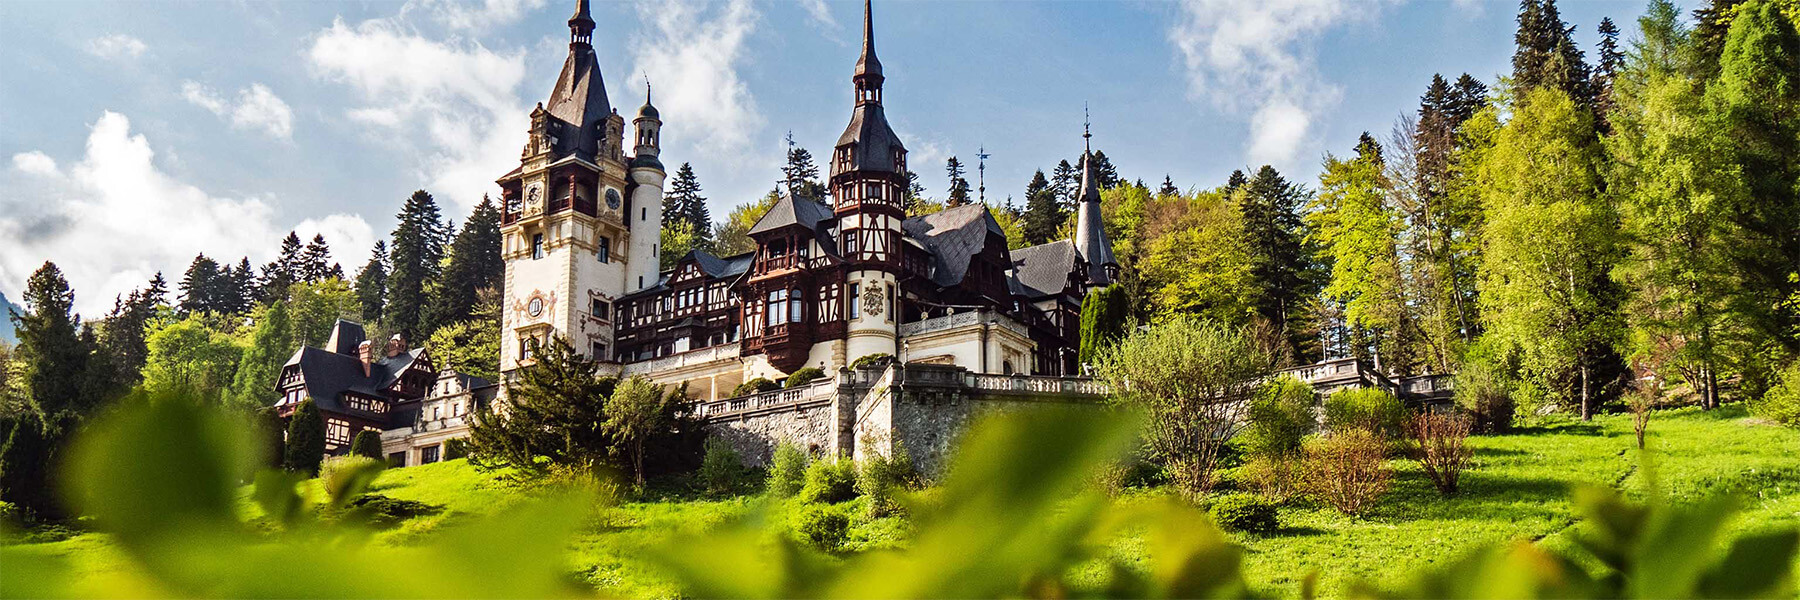 Peleș Castle in Romania